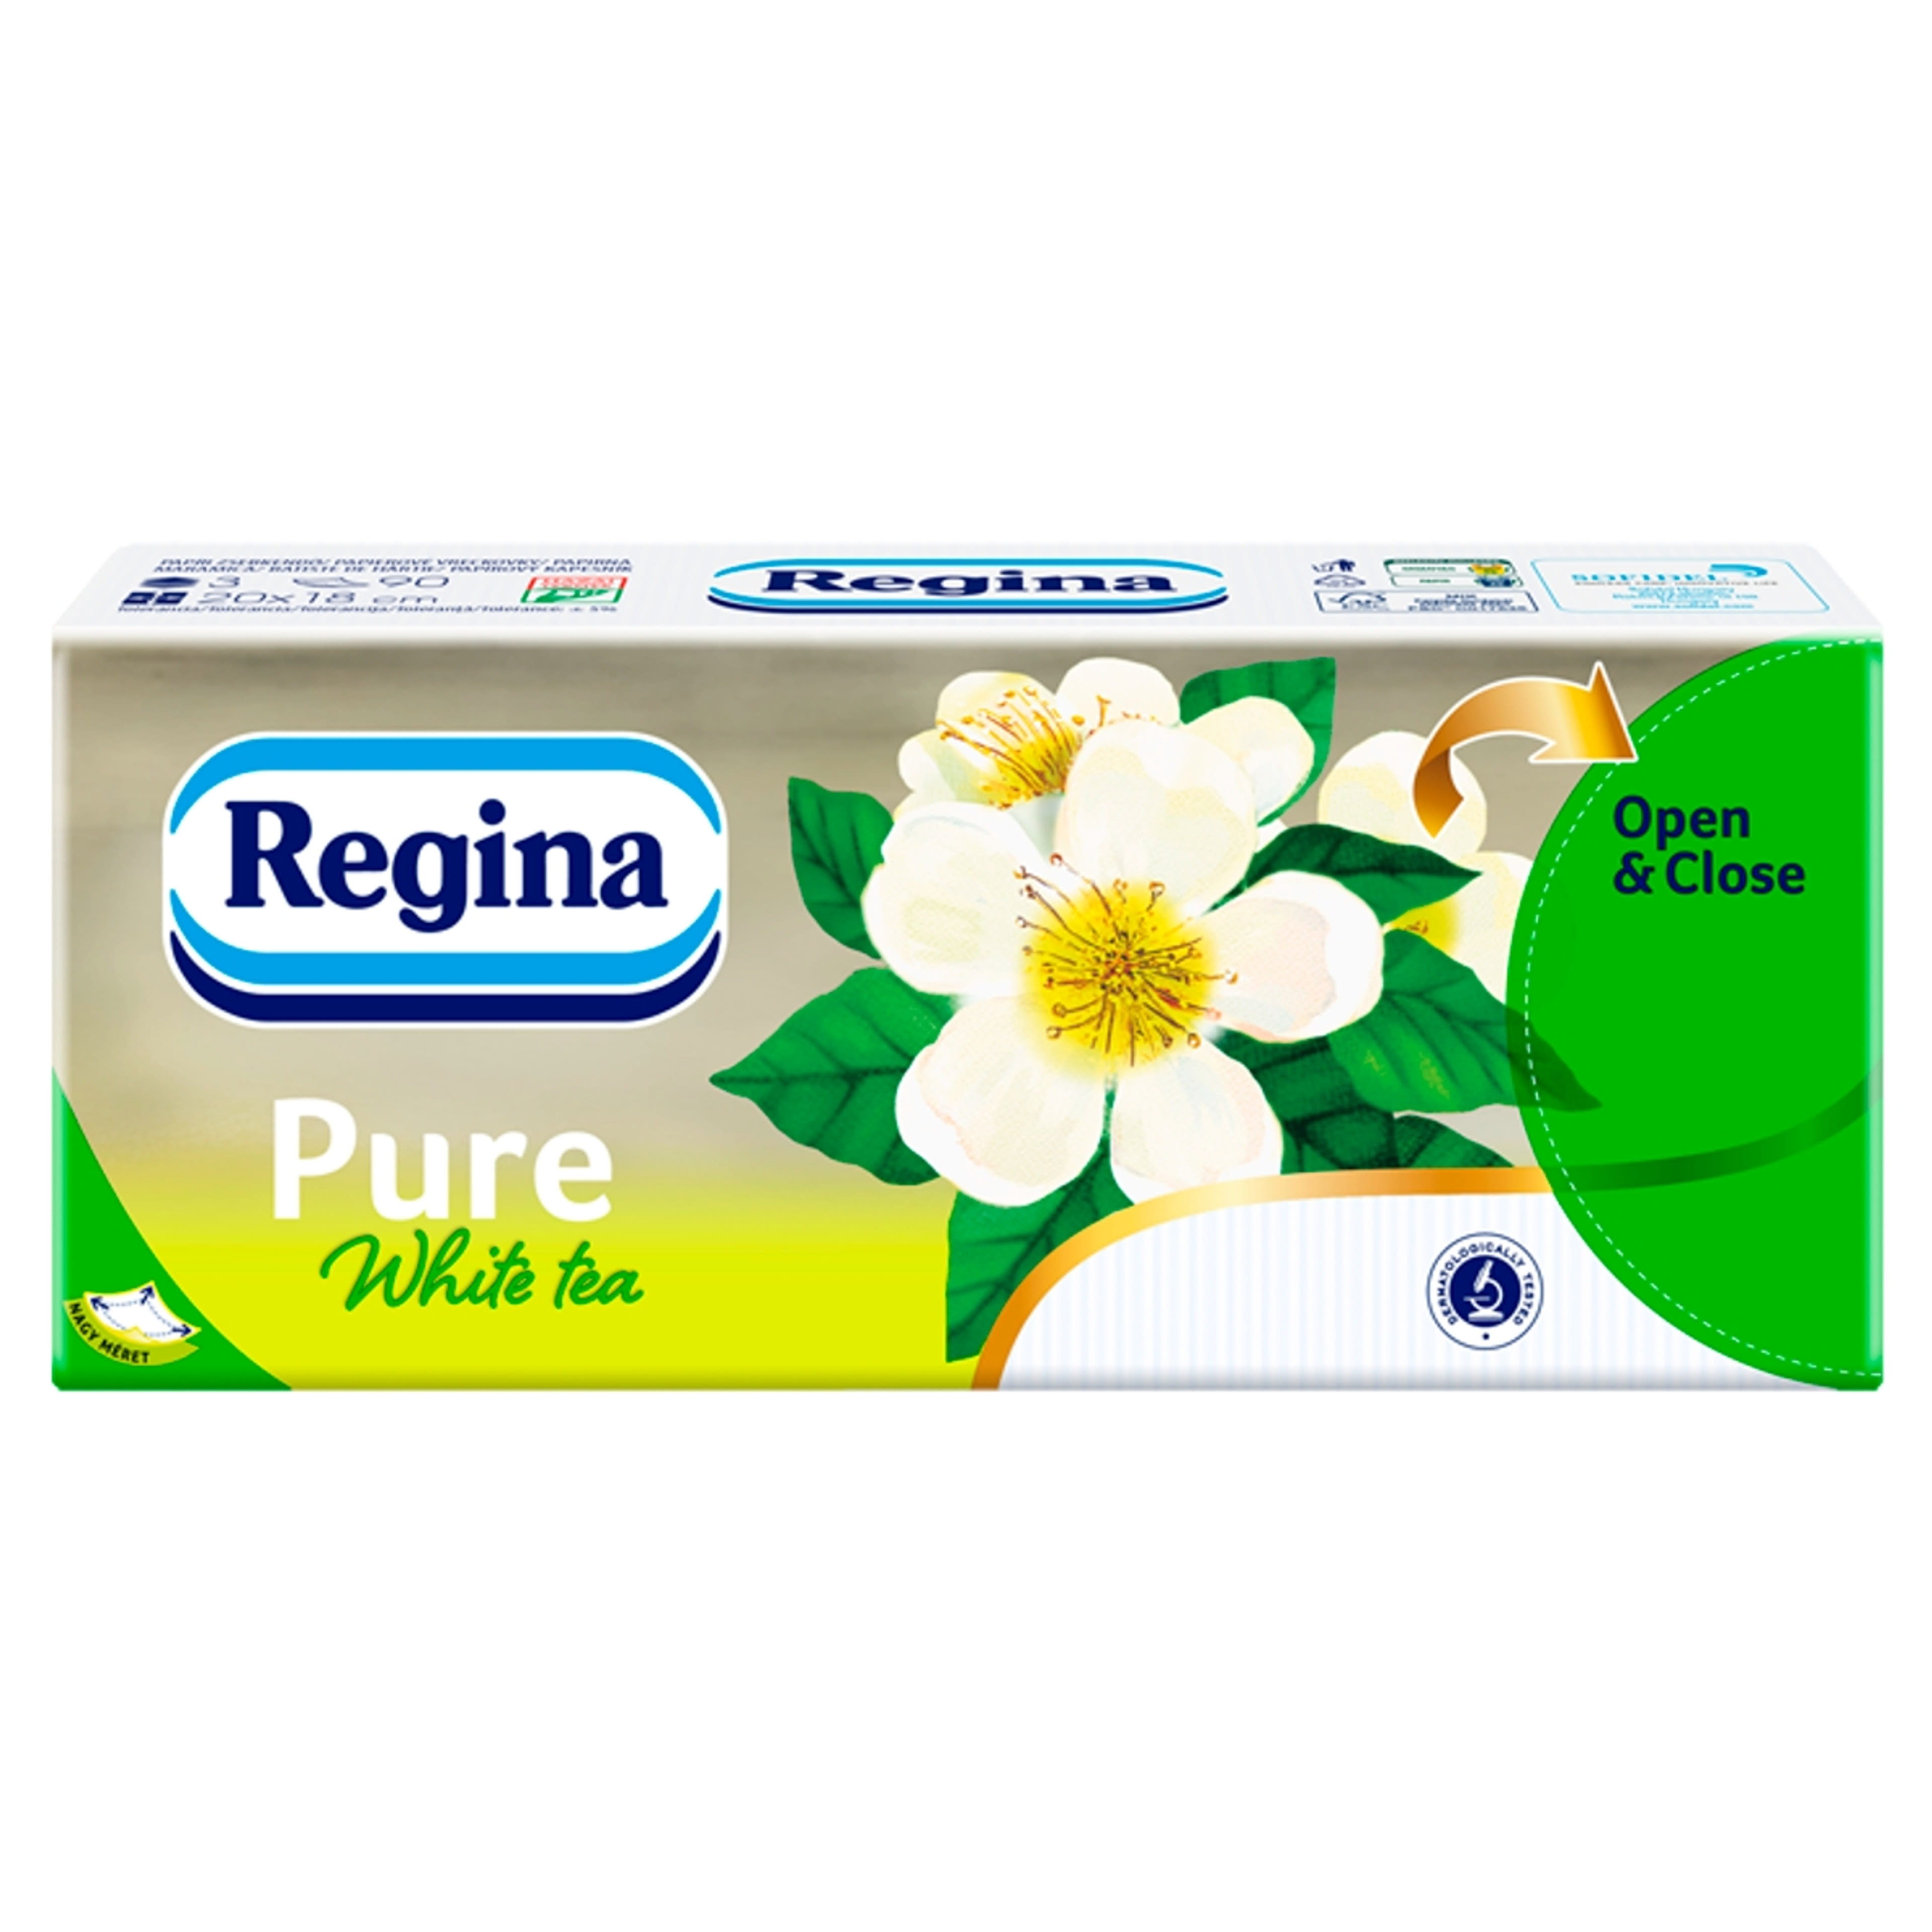 Regina papírzsebkendő pure white tea 3 rétegű - 1 db-3